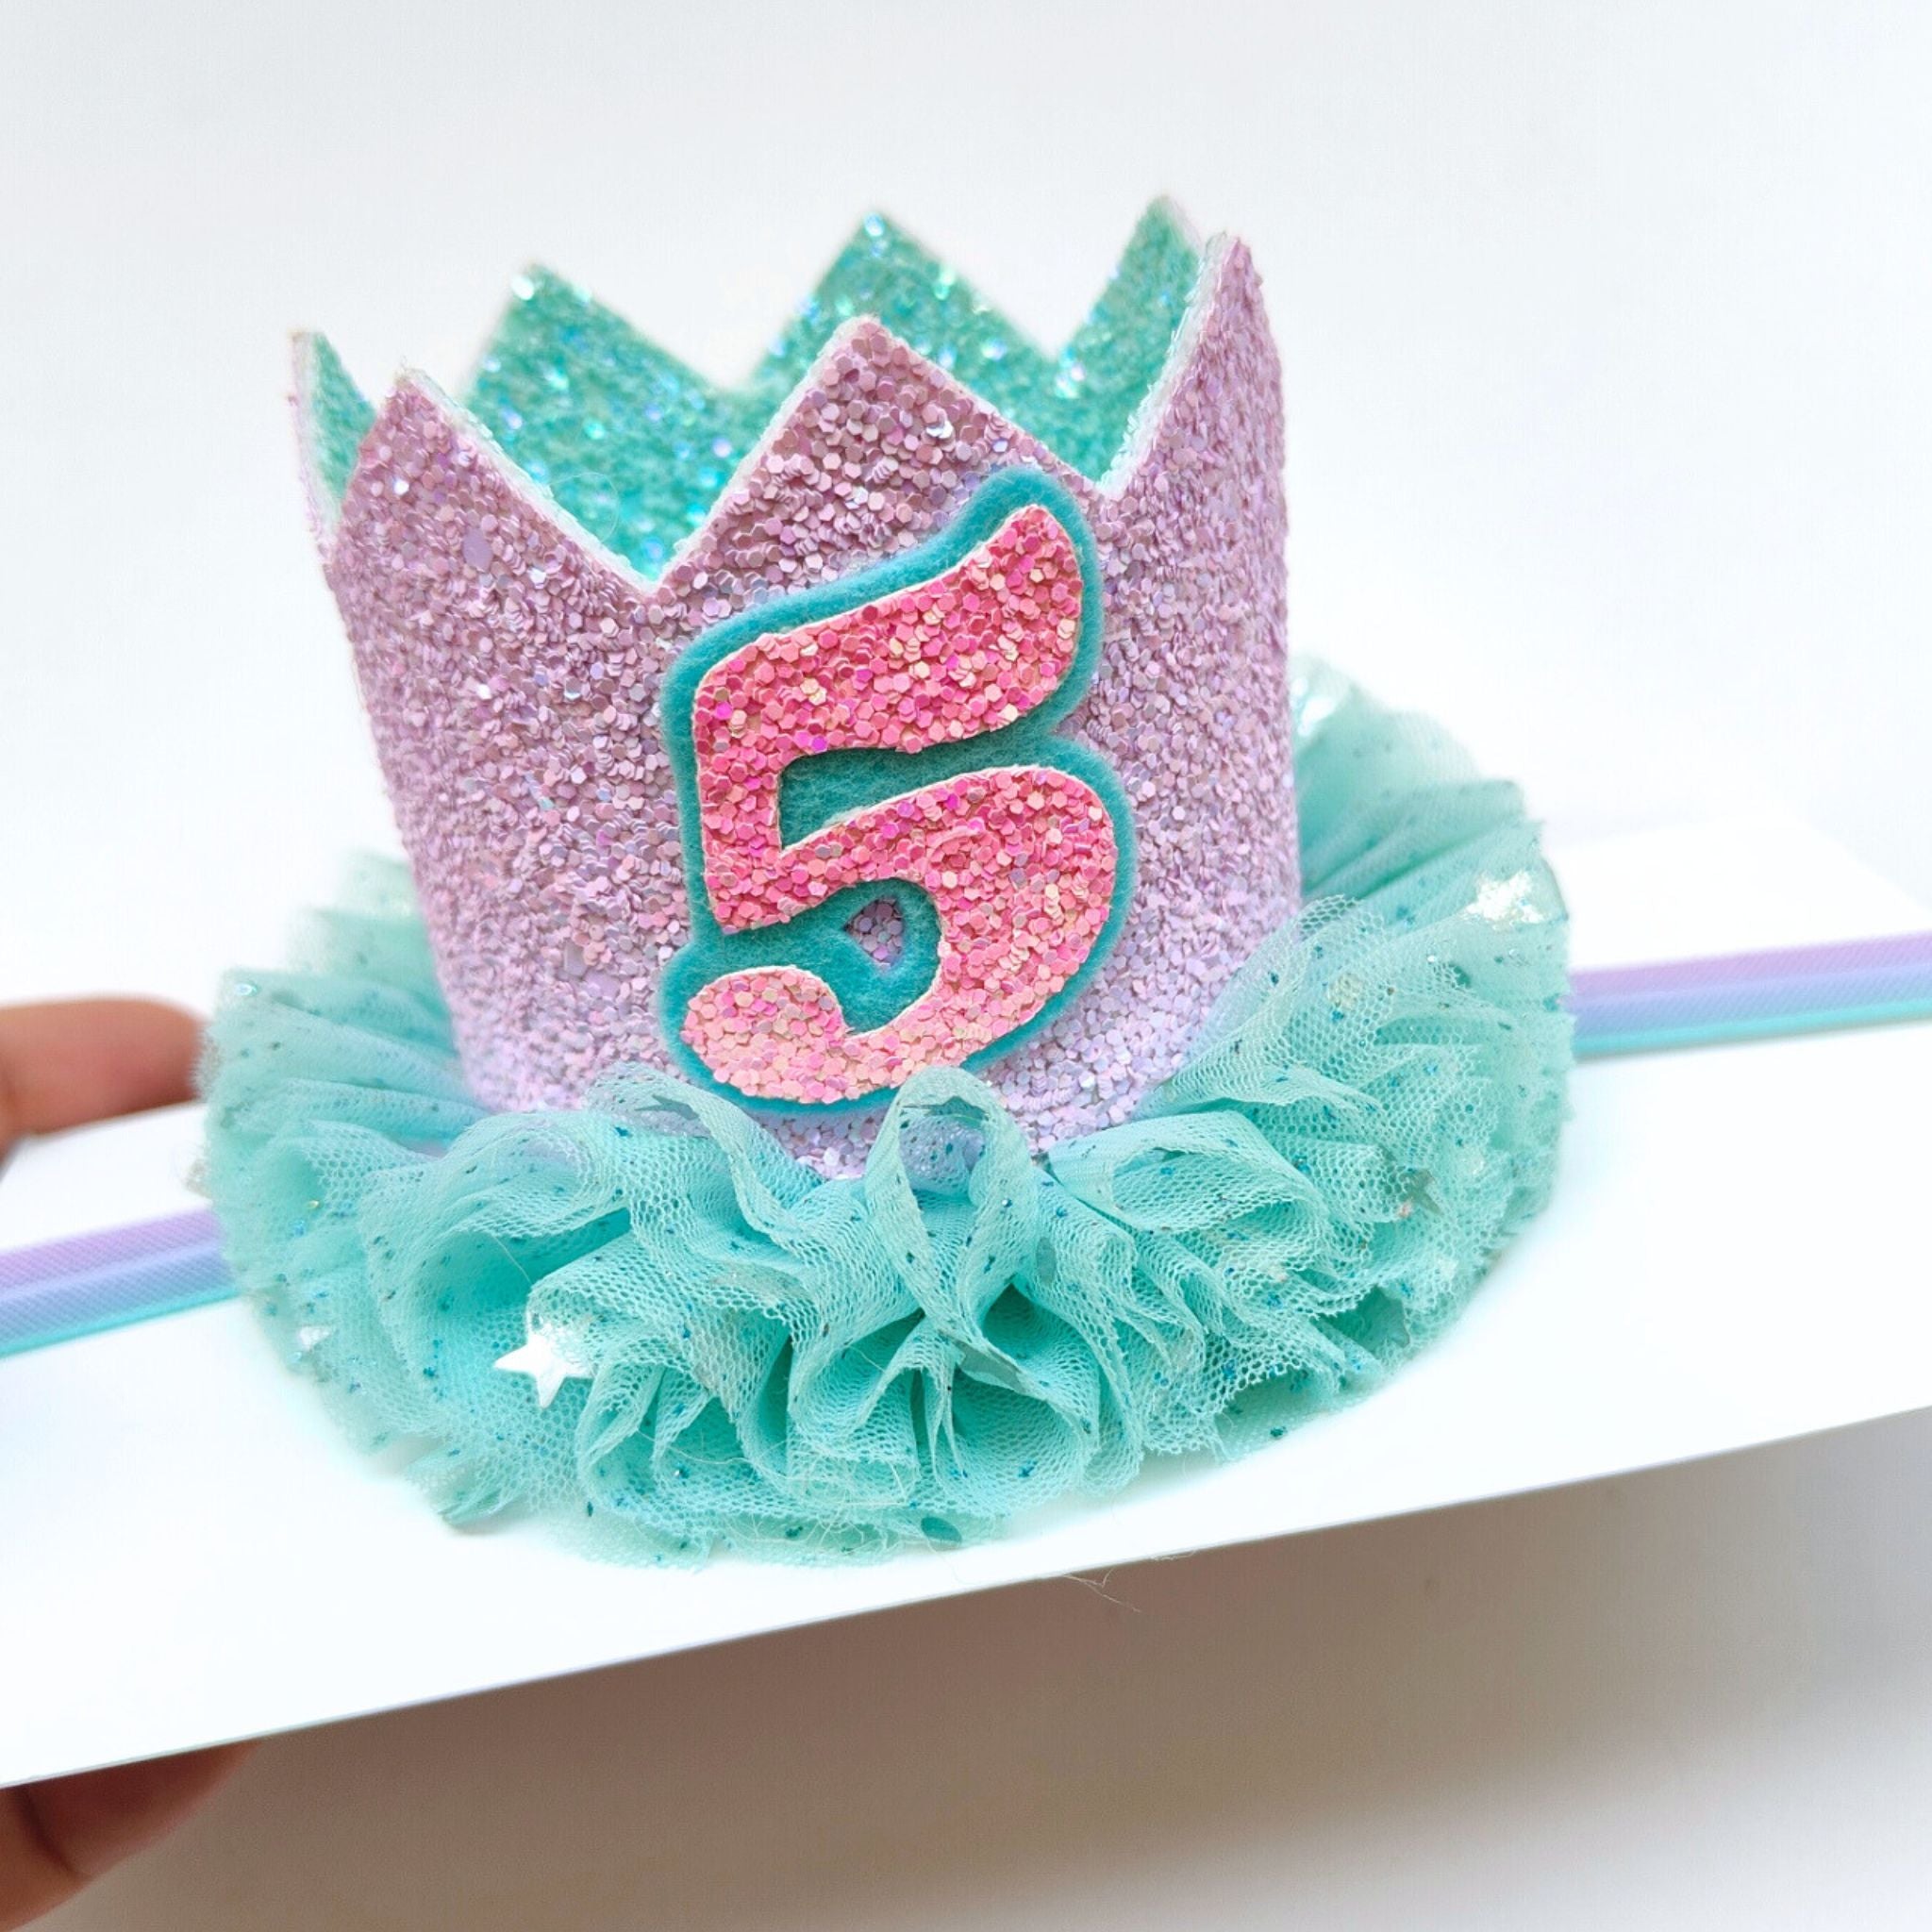 Birthday Crown-Colours of Mermaid